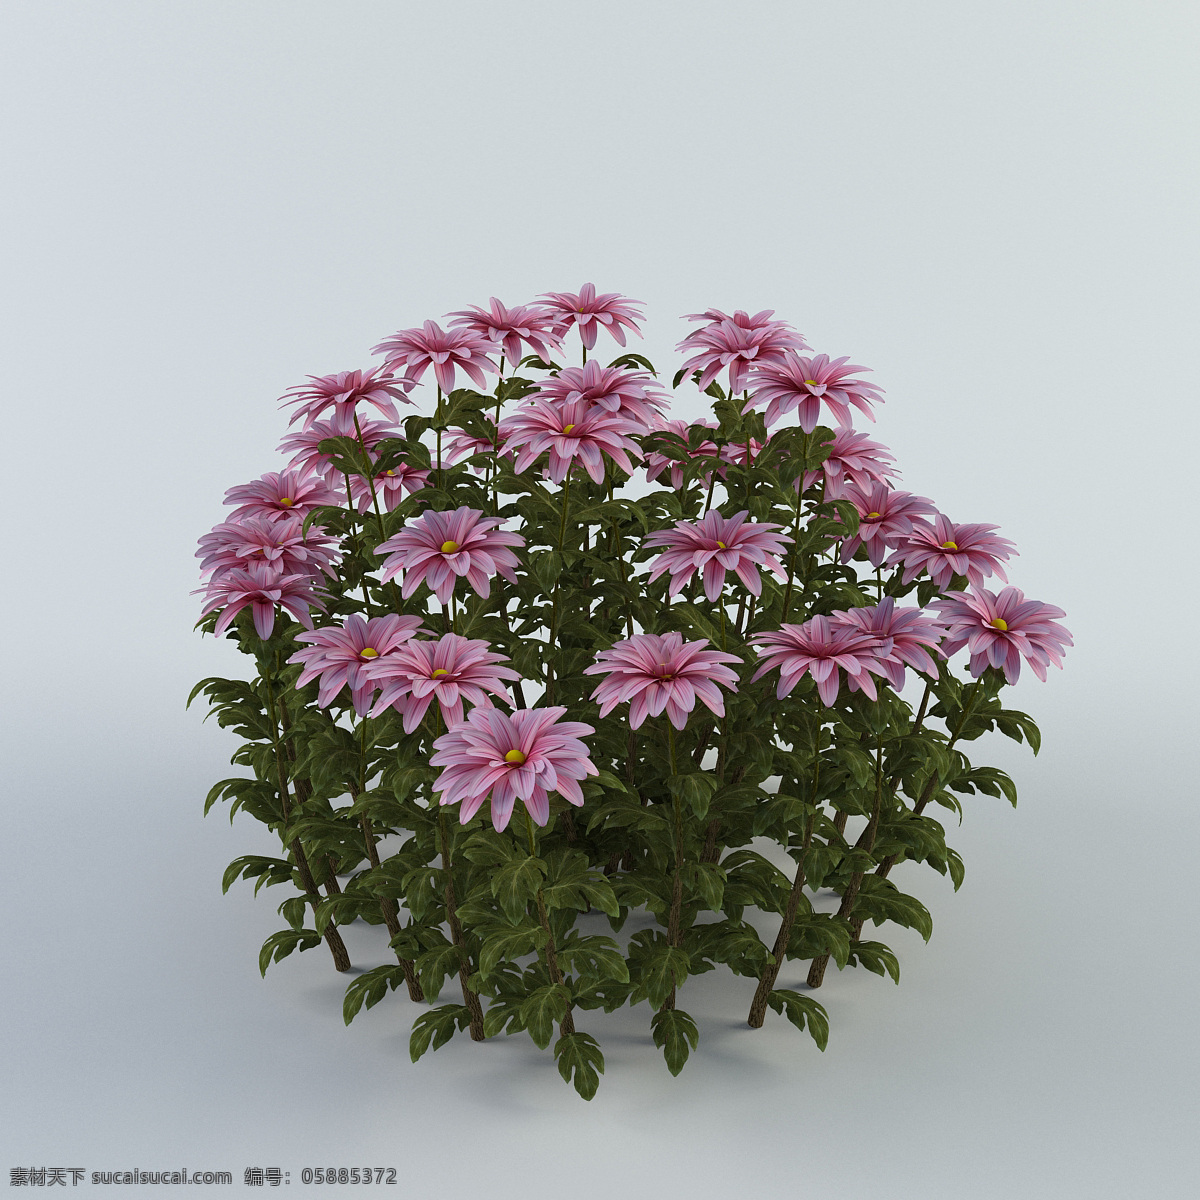 鲜花 盆景 模型 3d模型 3d渲染 效果图 模型素材 盆景模型